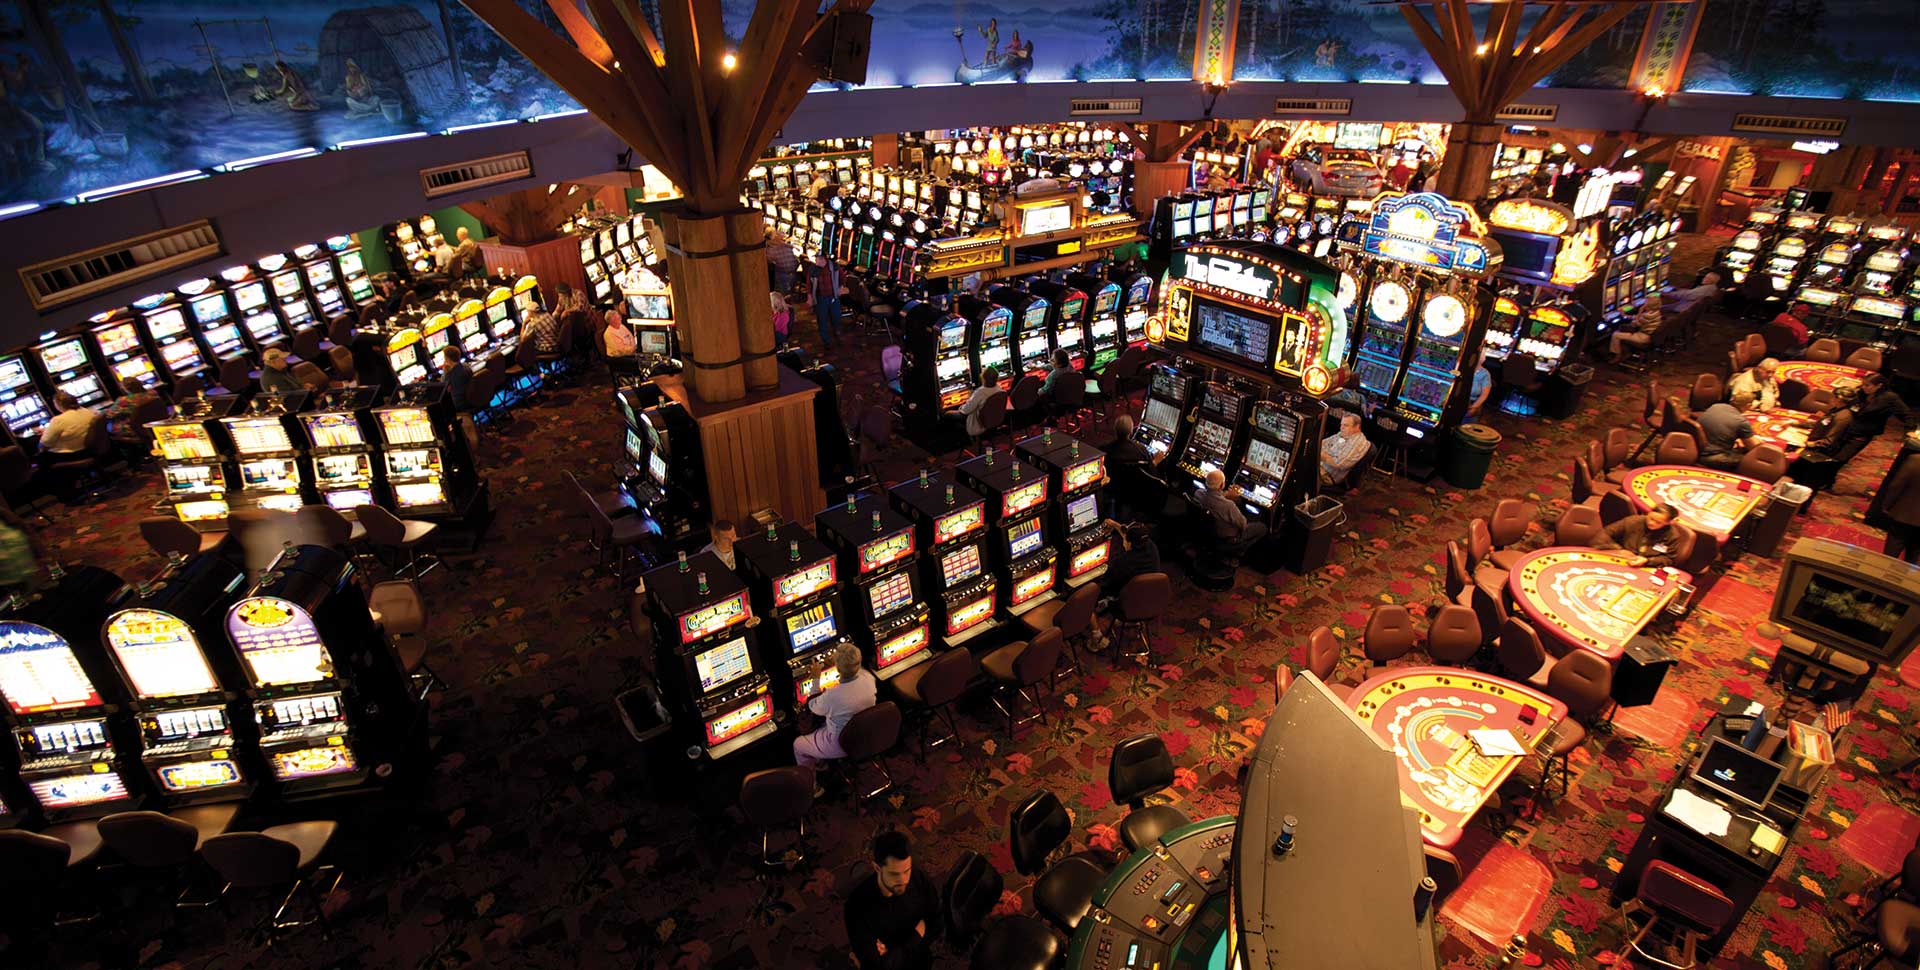 Wieso Sollten Wafer Kostenlose Book Of Ra Deluxe Gratis Aufführen neue online casinos mit startguthaben ohne einzahlung Bloß Registration Germanisch Maschinenspiele Runterladeneffizienz